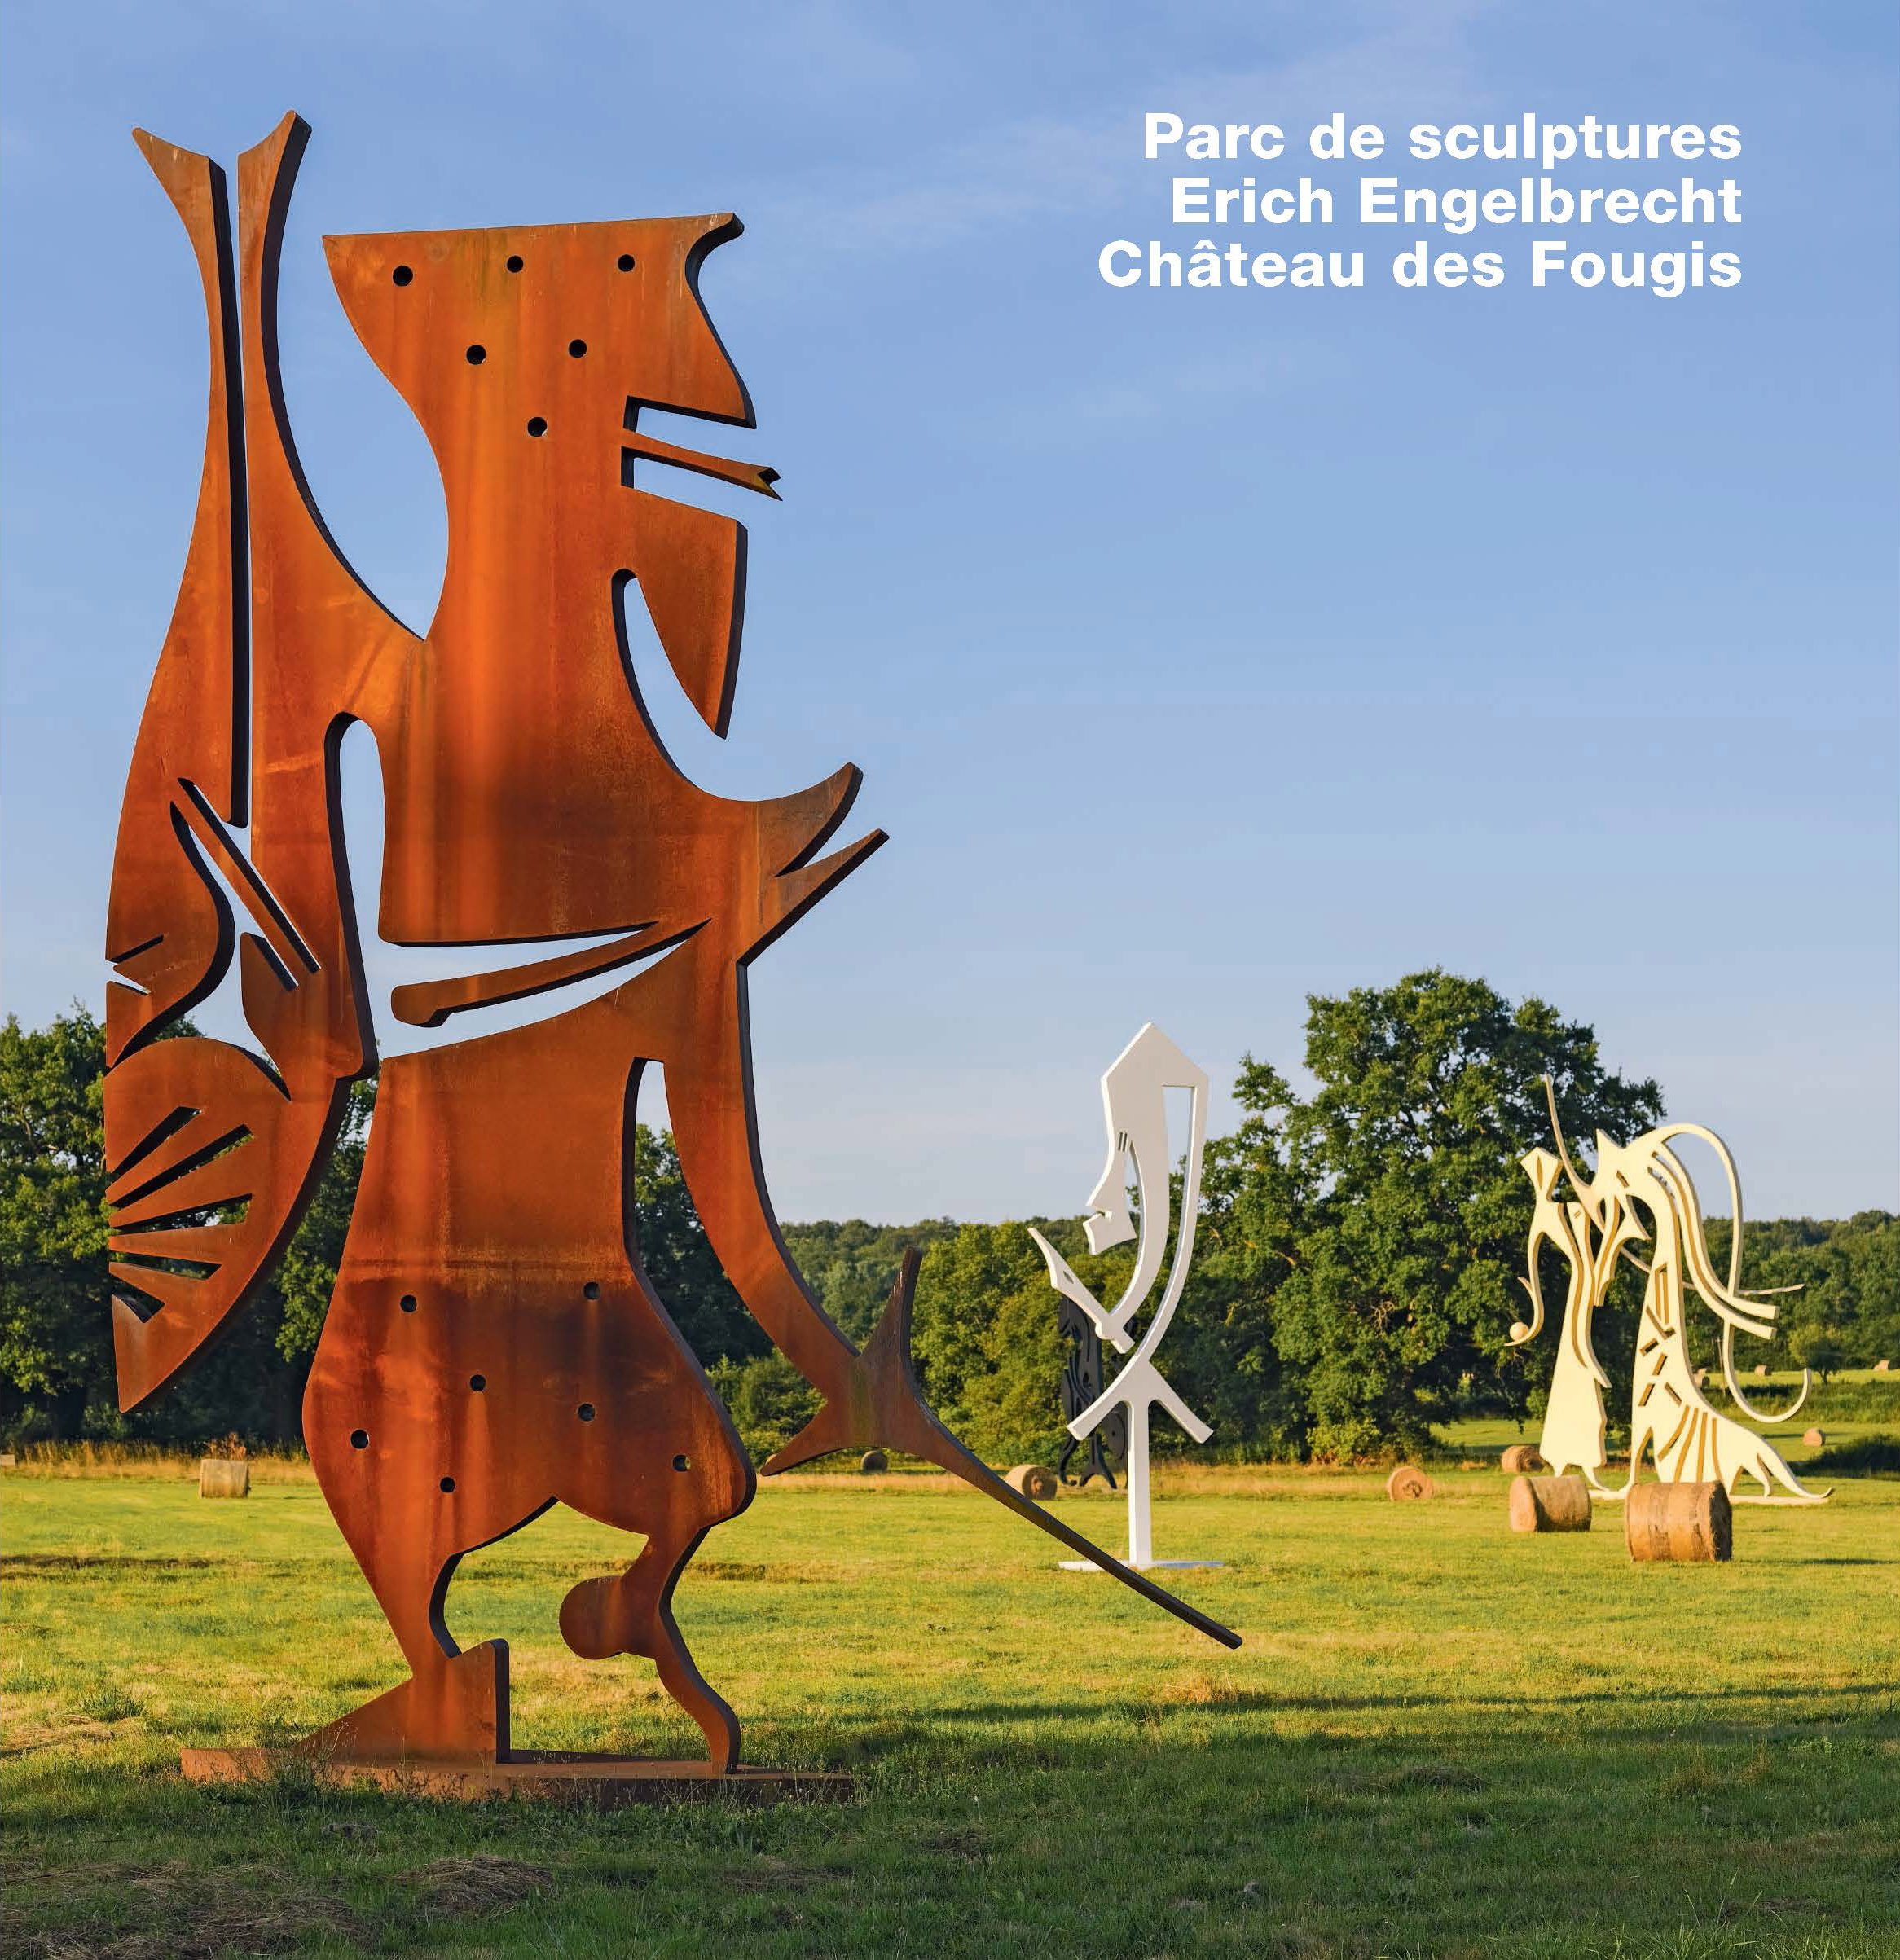 Erich Engelbrecht, Catalogue Sculpture Park, Chateau des Fougis